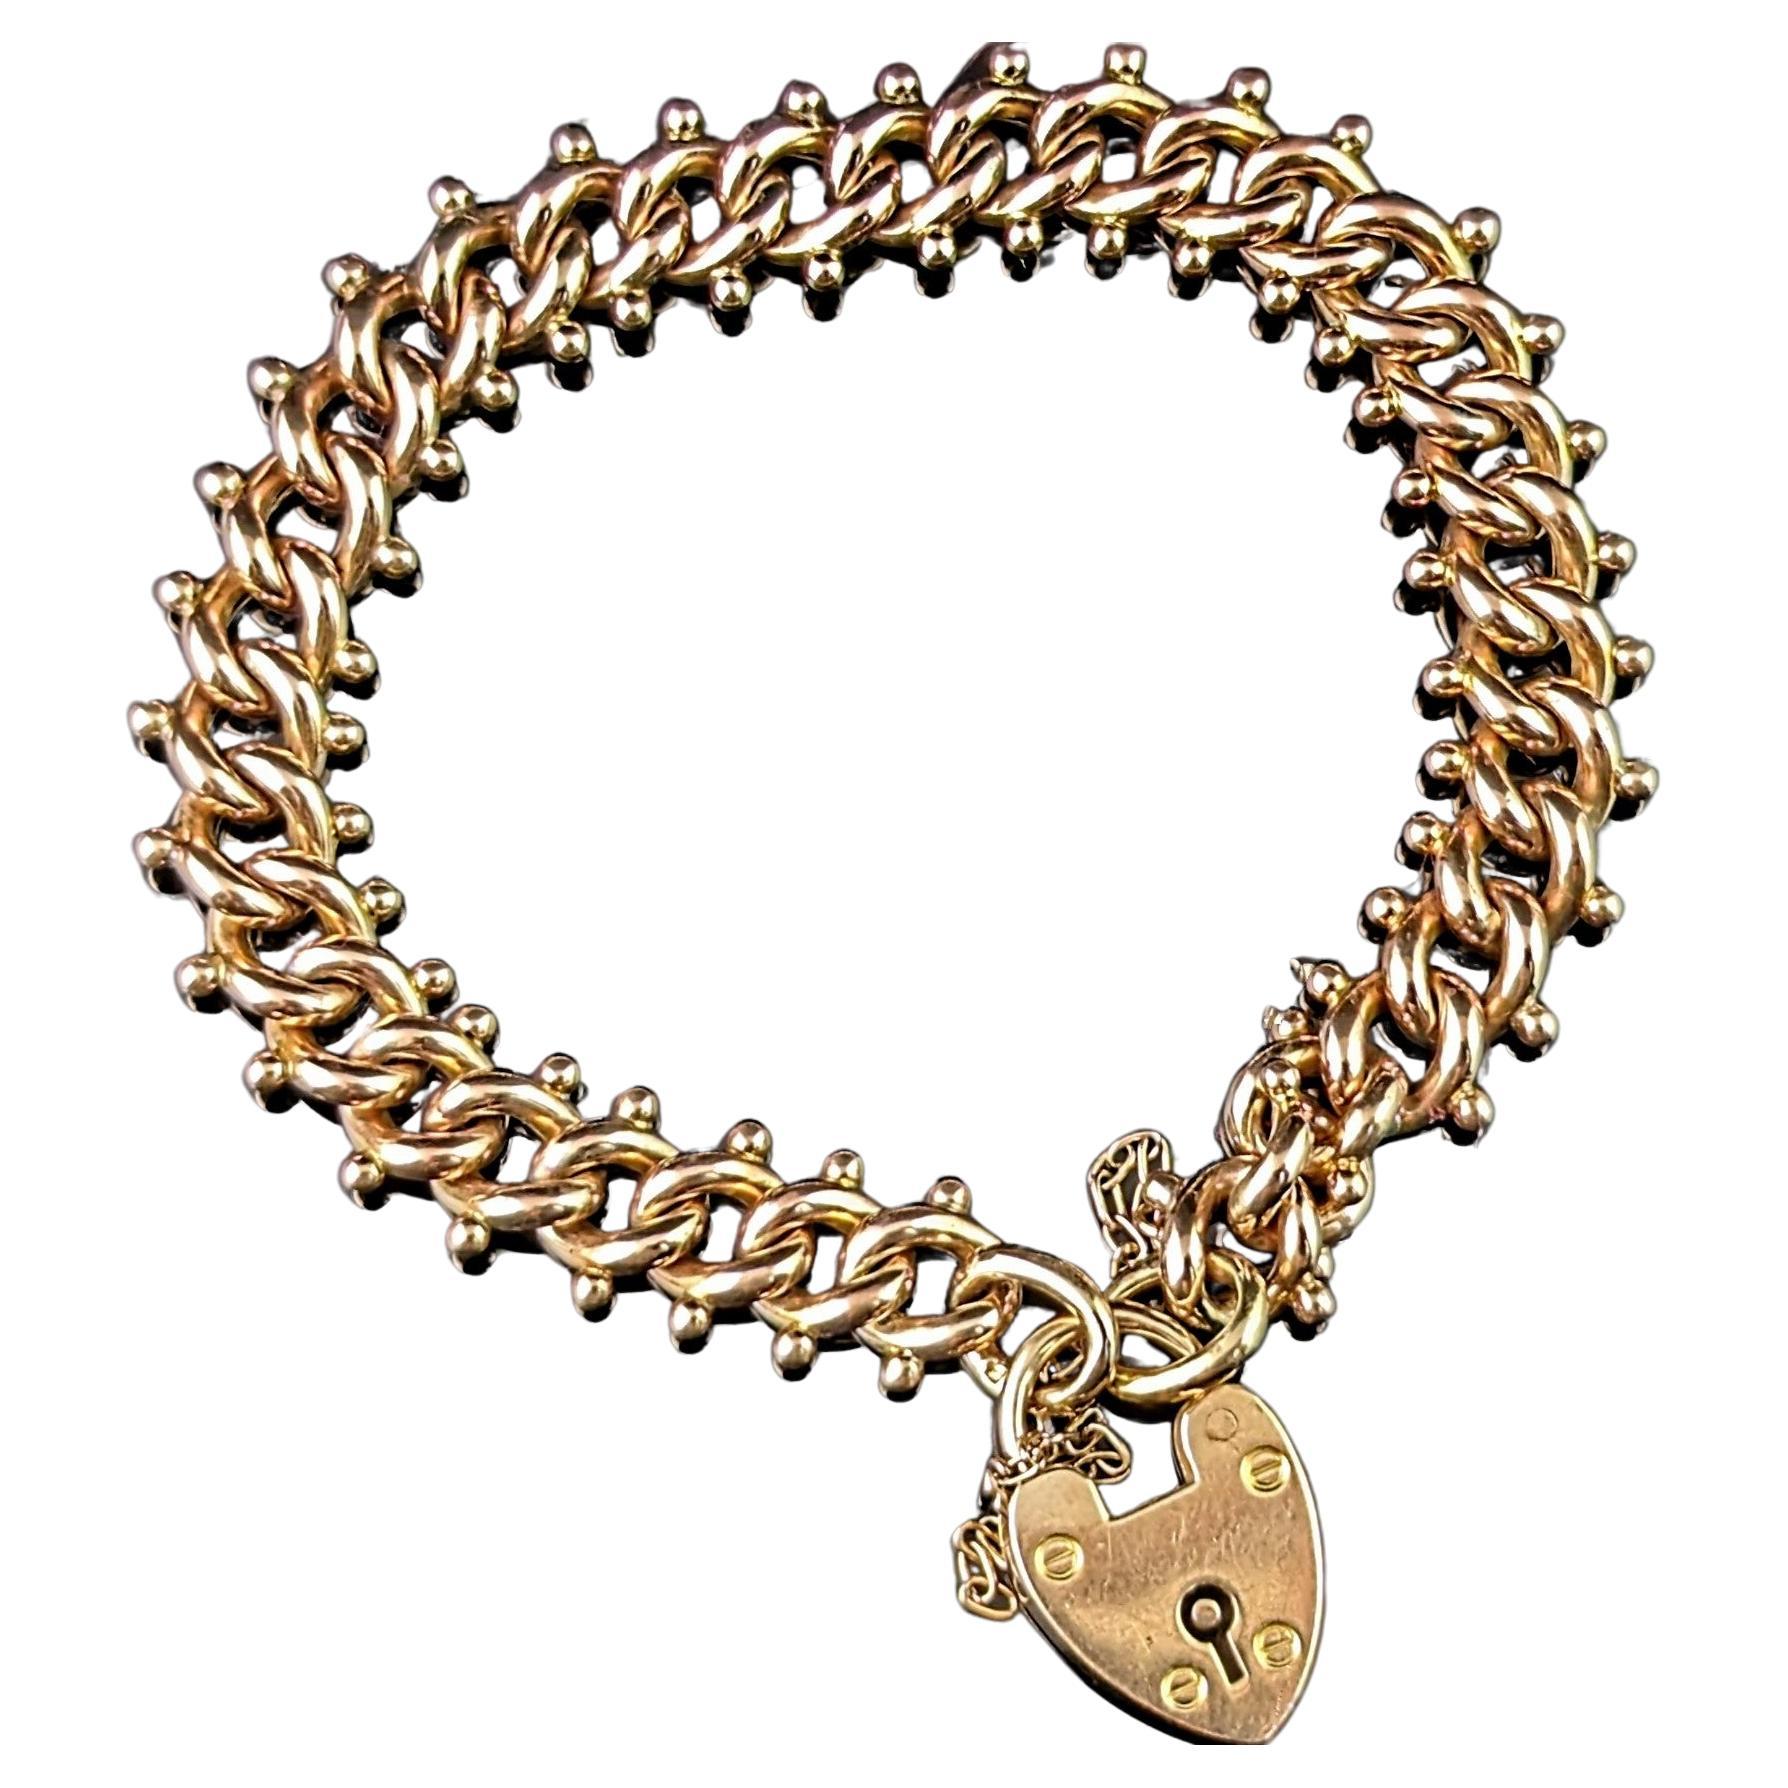 Antique 9k gold fancy curb link bracelet, Edwardian 